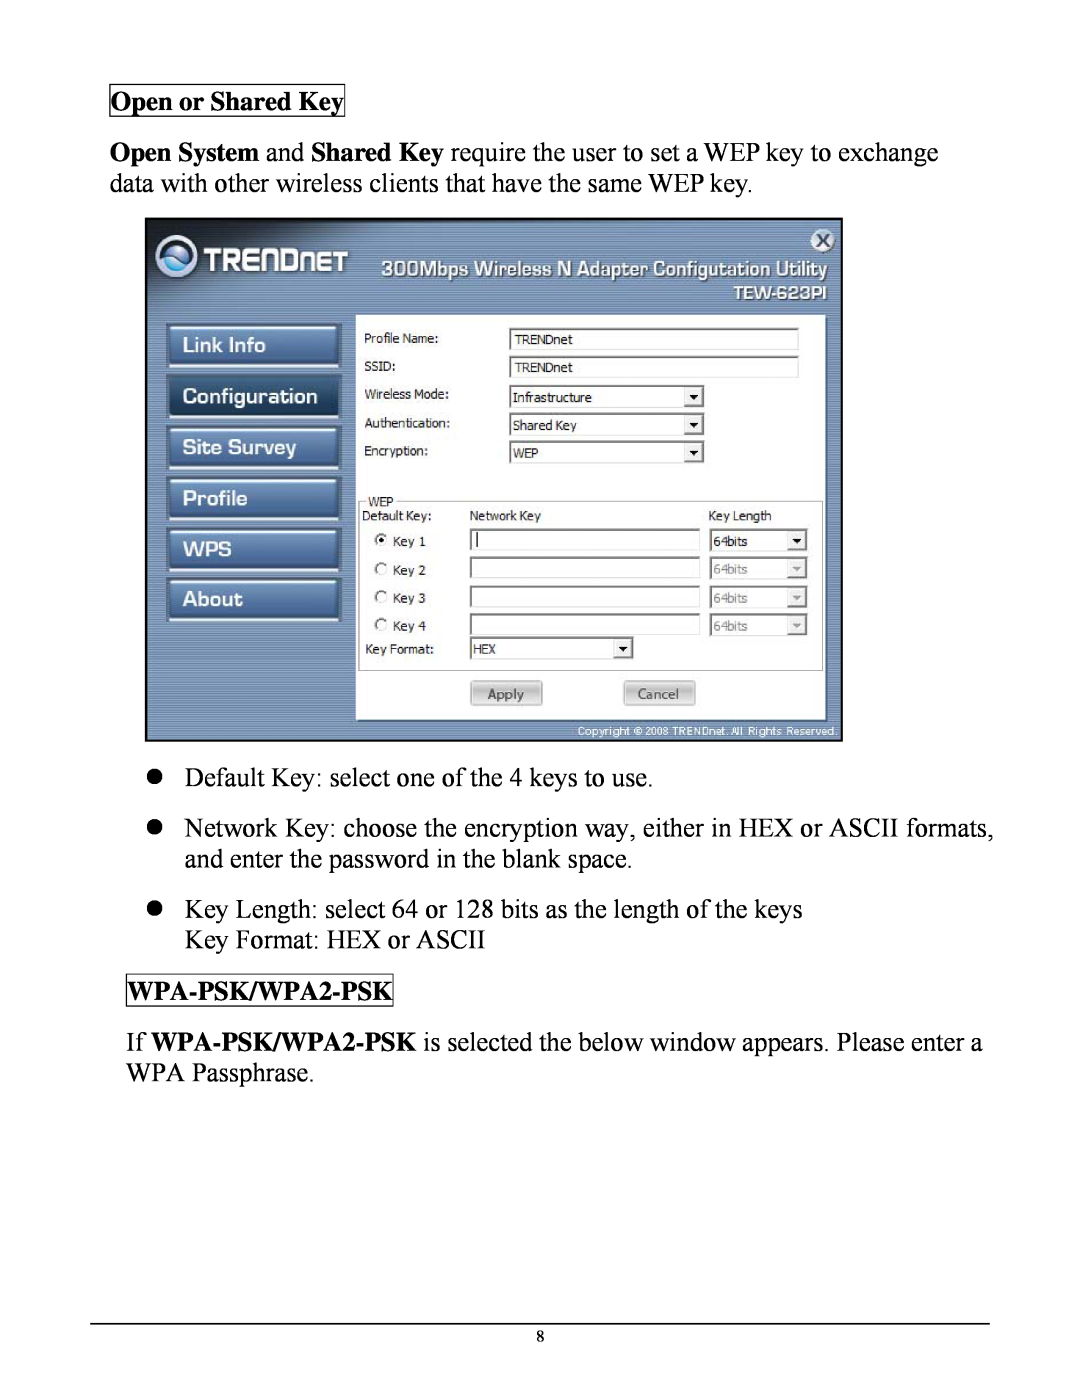 TRENDnet TEW623PI manual Open or Shared Key, WPA-PSK/WPA2-PSK 